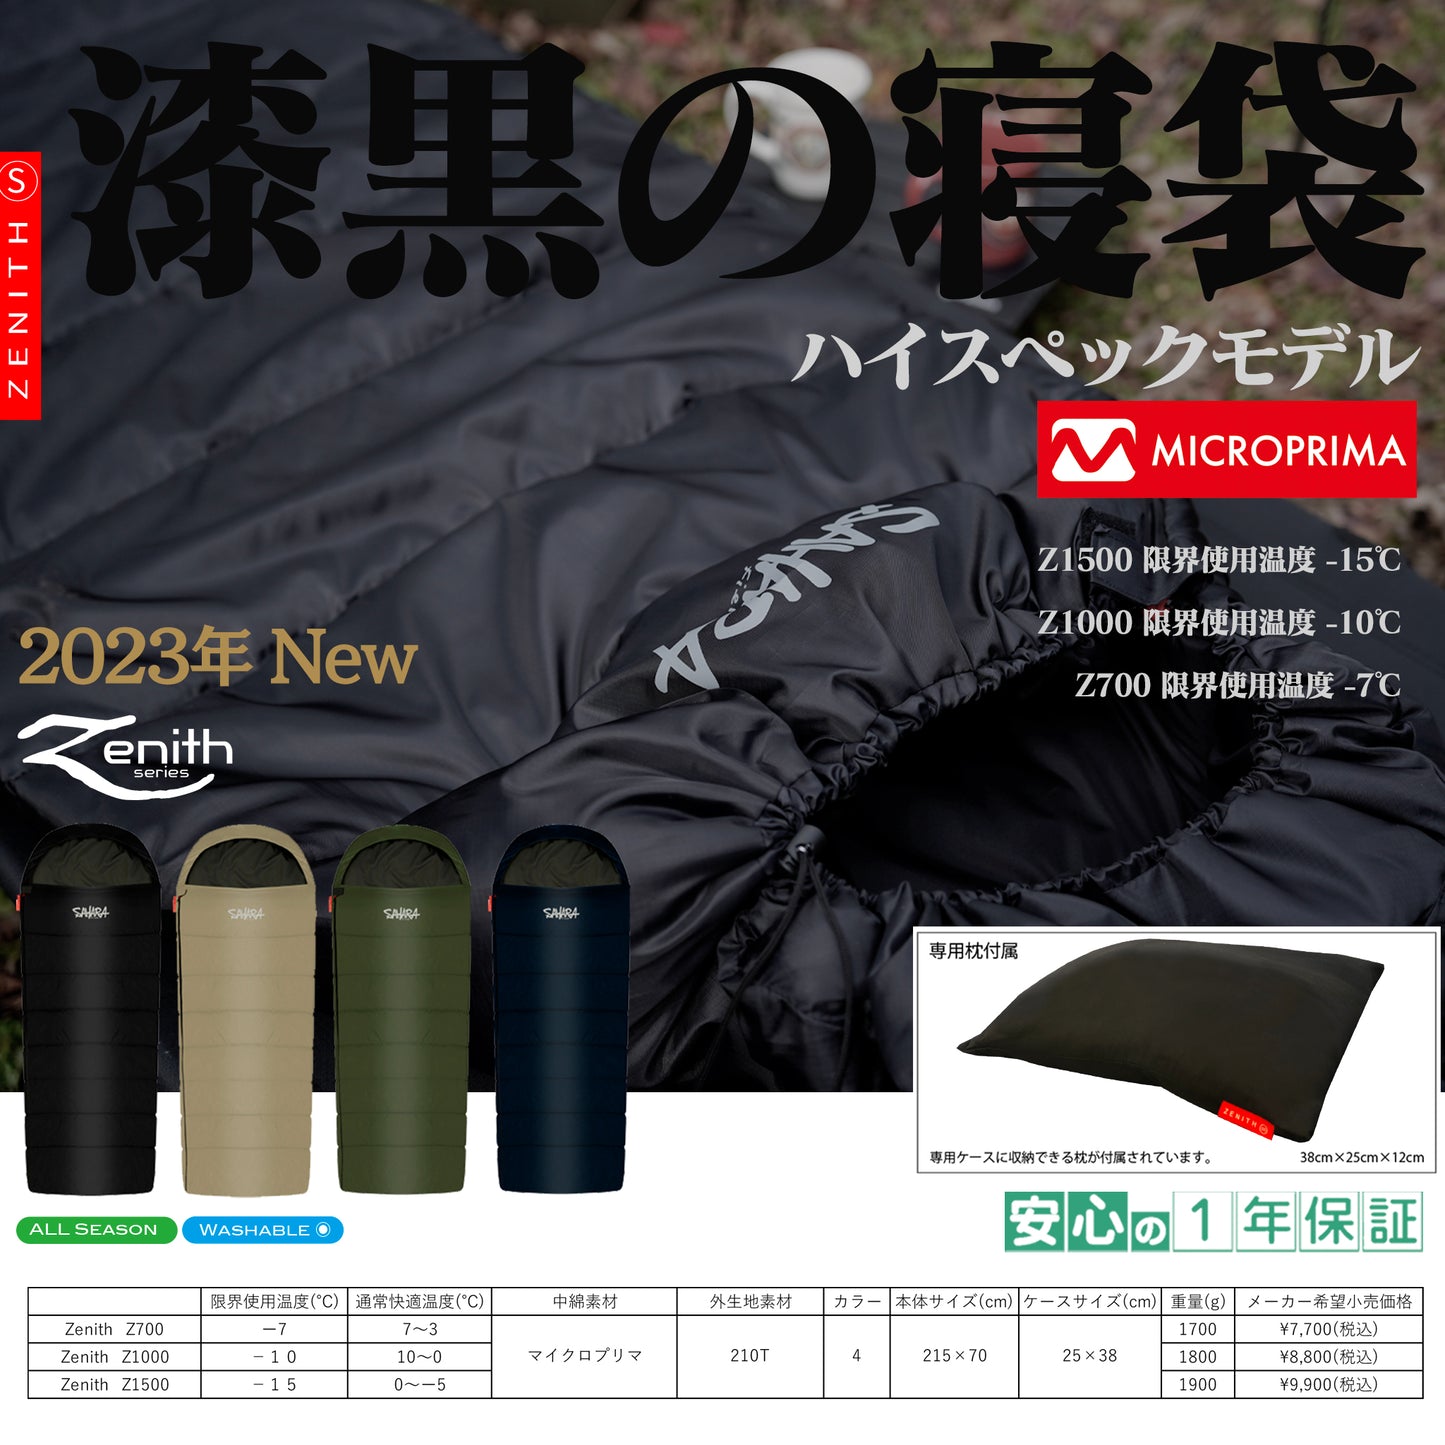 2023NEW FieldSAHARA Z700 封筒型 枕付き 4色 限界使用可能温度 -7℃ ダウン - FieldSAHARA